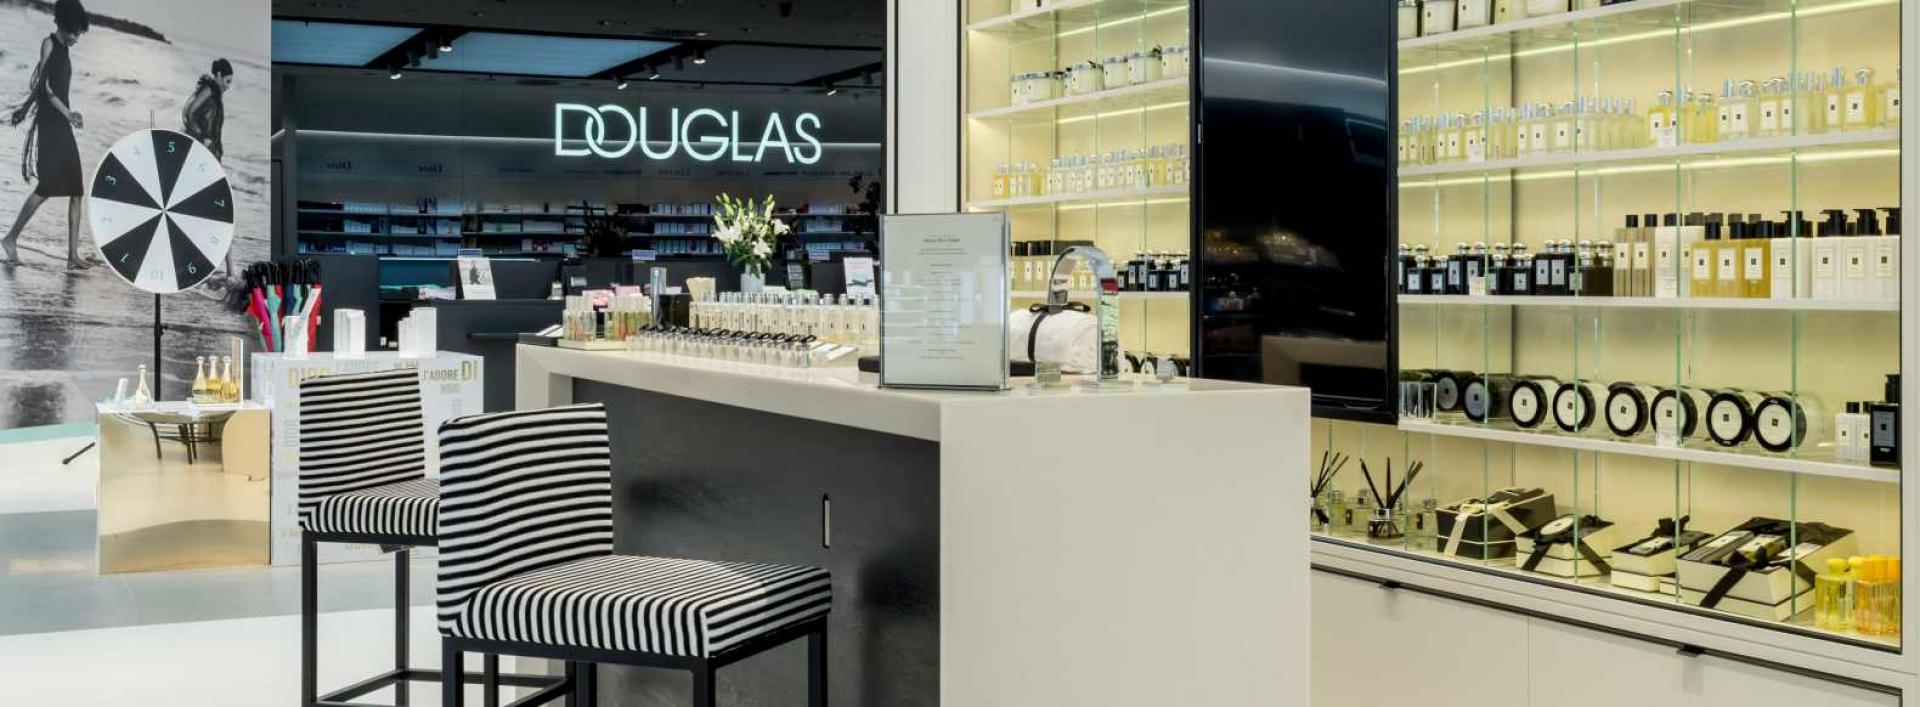 Mocno rozwija się kategoria skin care, przyszłość to personalizacja i jeszcze więcej marek niszowych  - Douglas śledząc trendy konsumenckie, aranżuje na nowo perfumerię w Galerii Mokotów